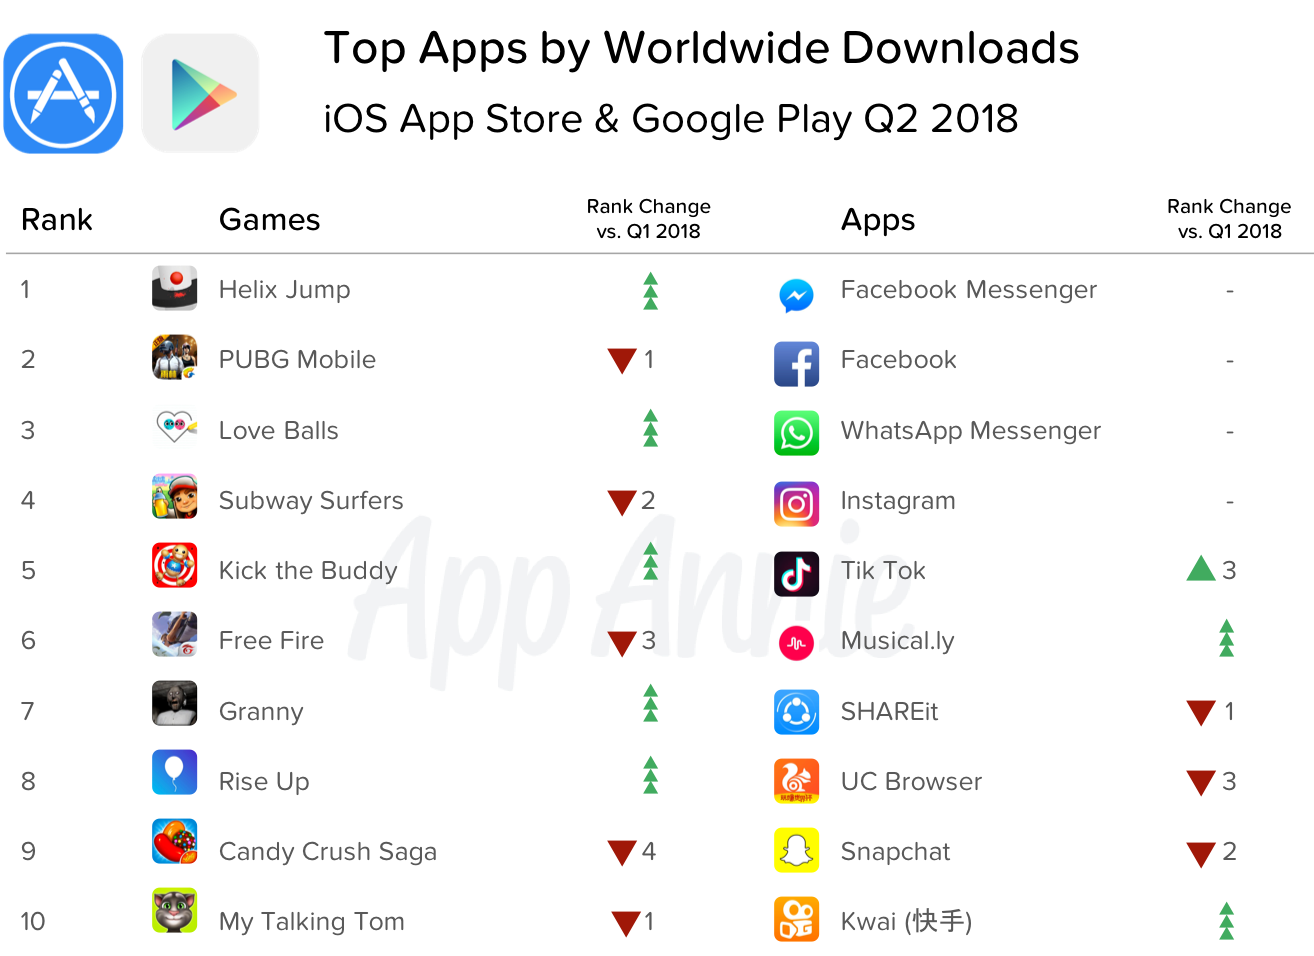 Pesquisa da App Annie sobre lojas de apps, segundo trimestre de 2018